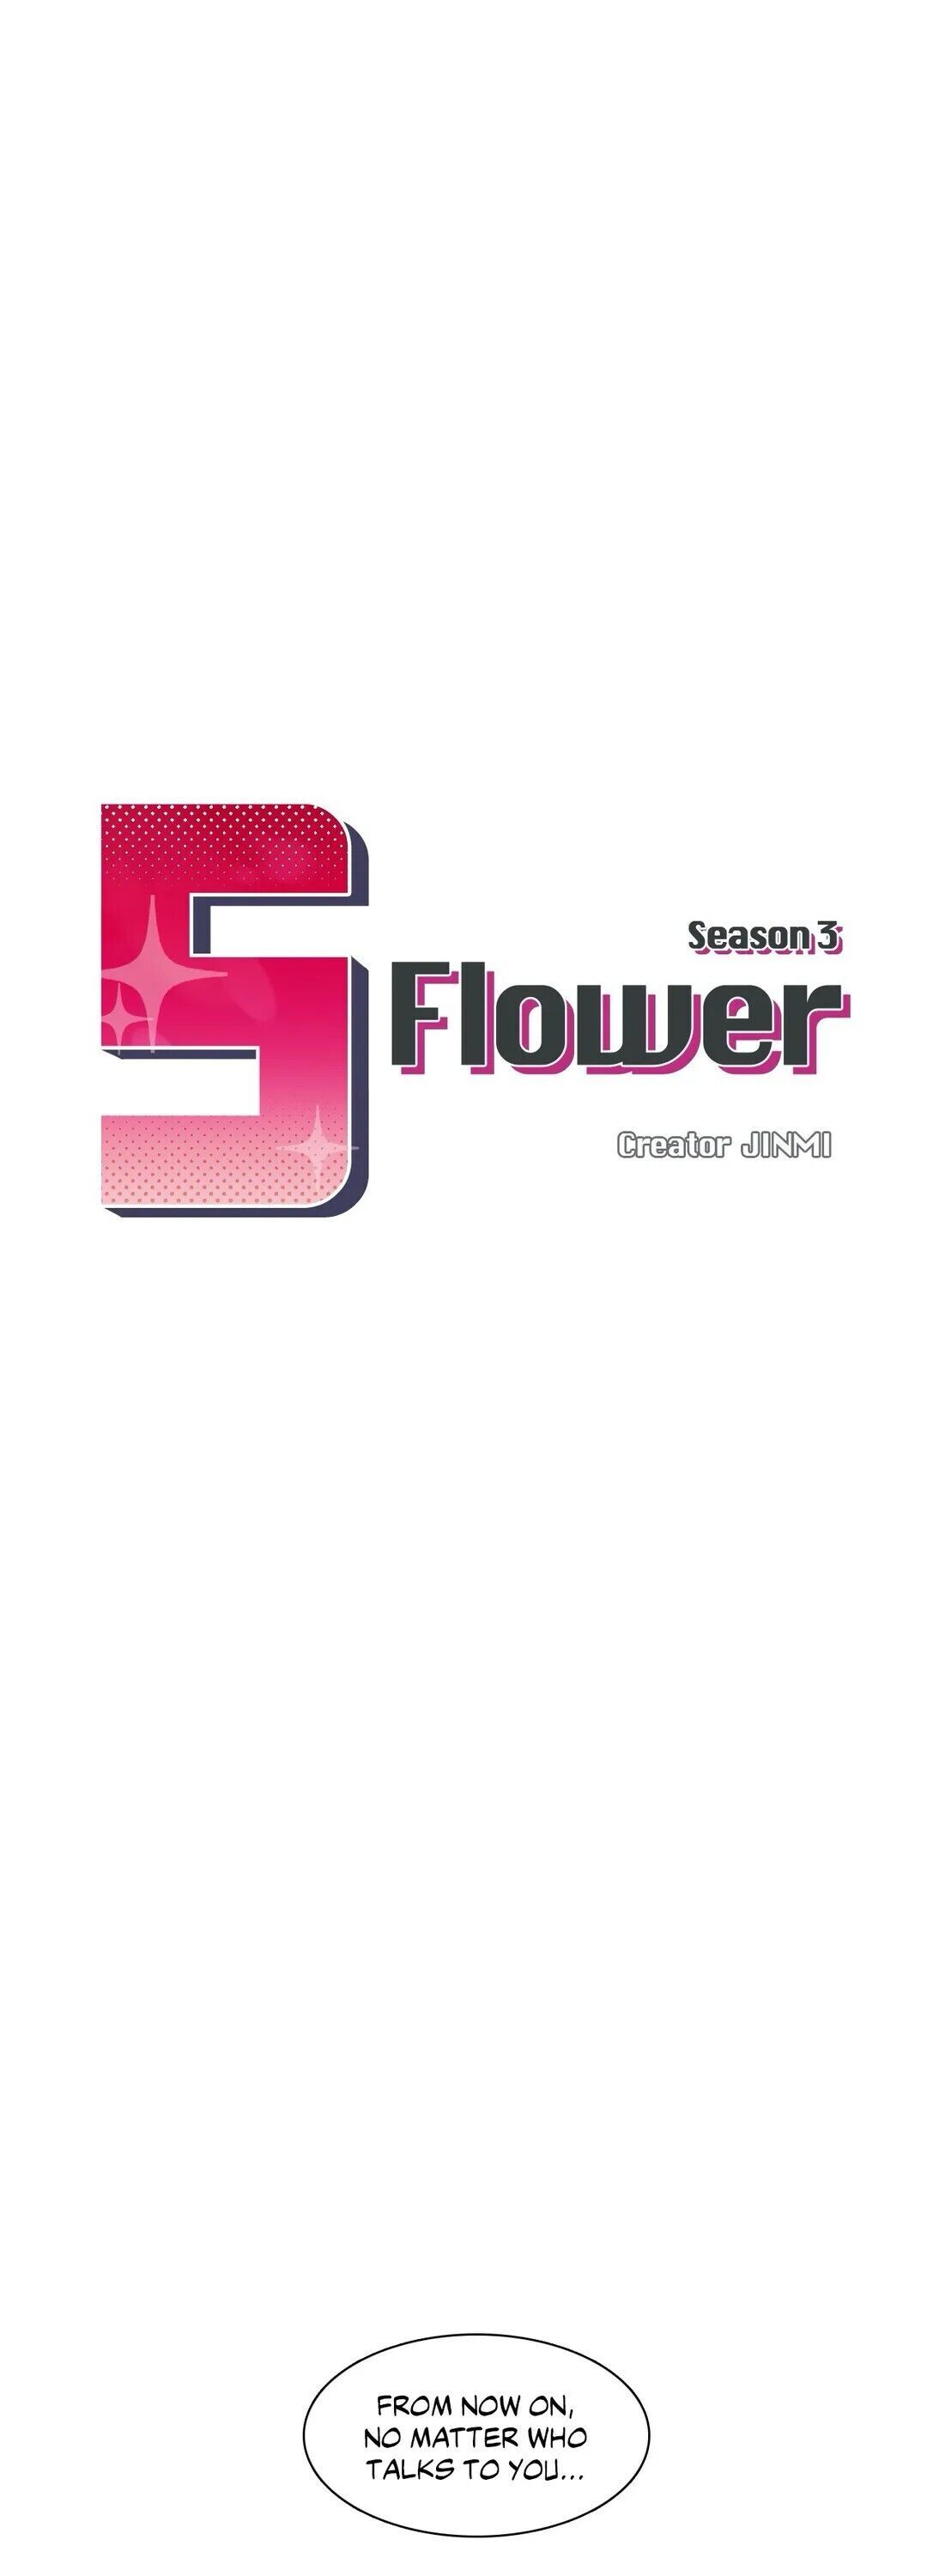 The image S Flower - Chapter 83 - lZUzfYu7fjWlyVj - ManhwaManga.io